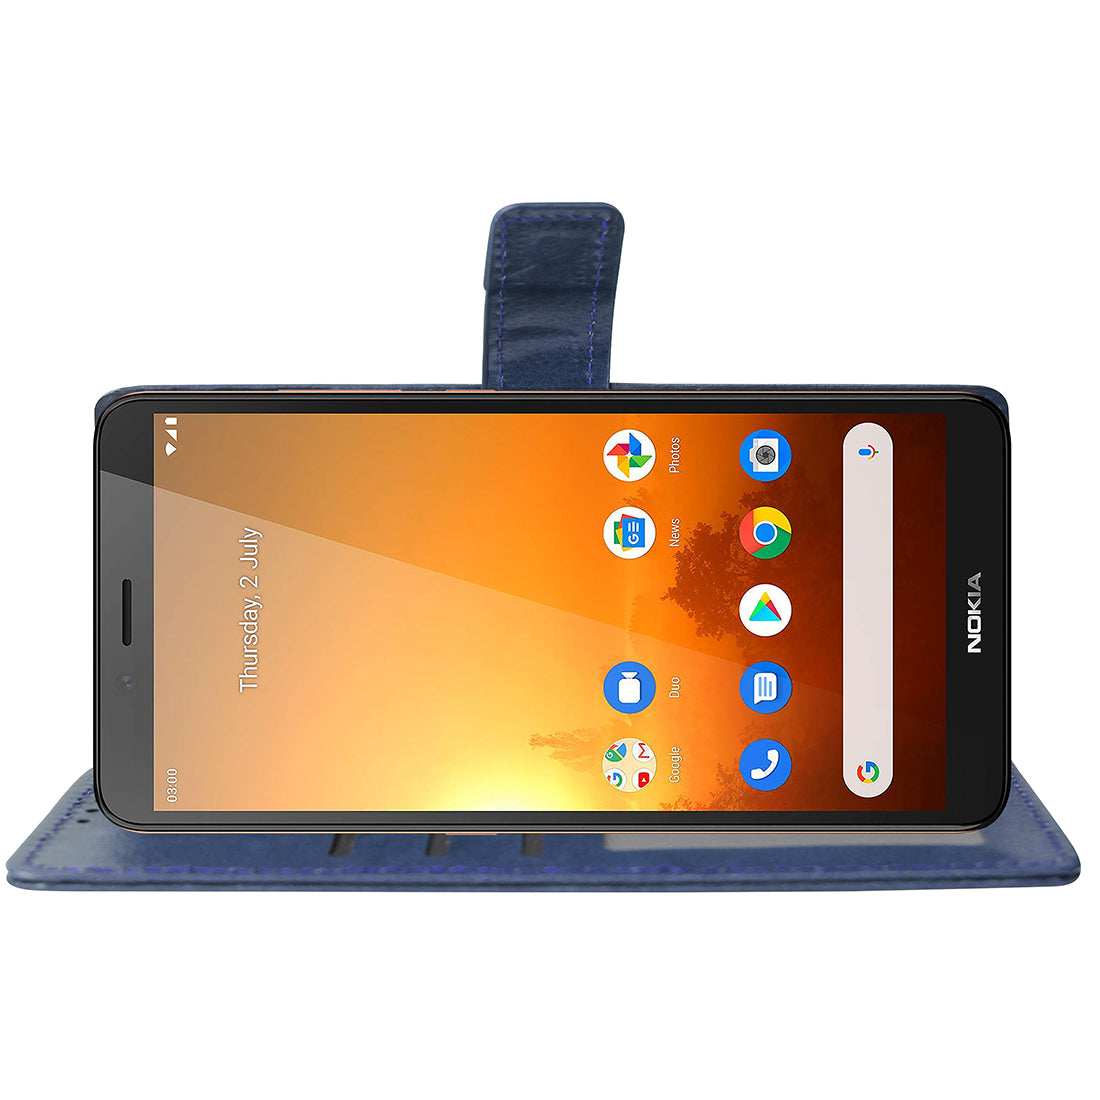 Premium Wallet Flip Cover for Nokia C3